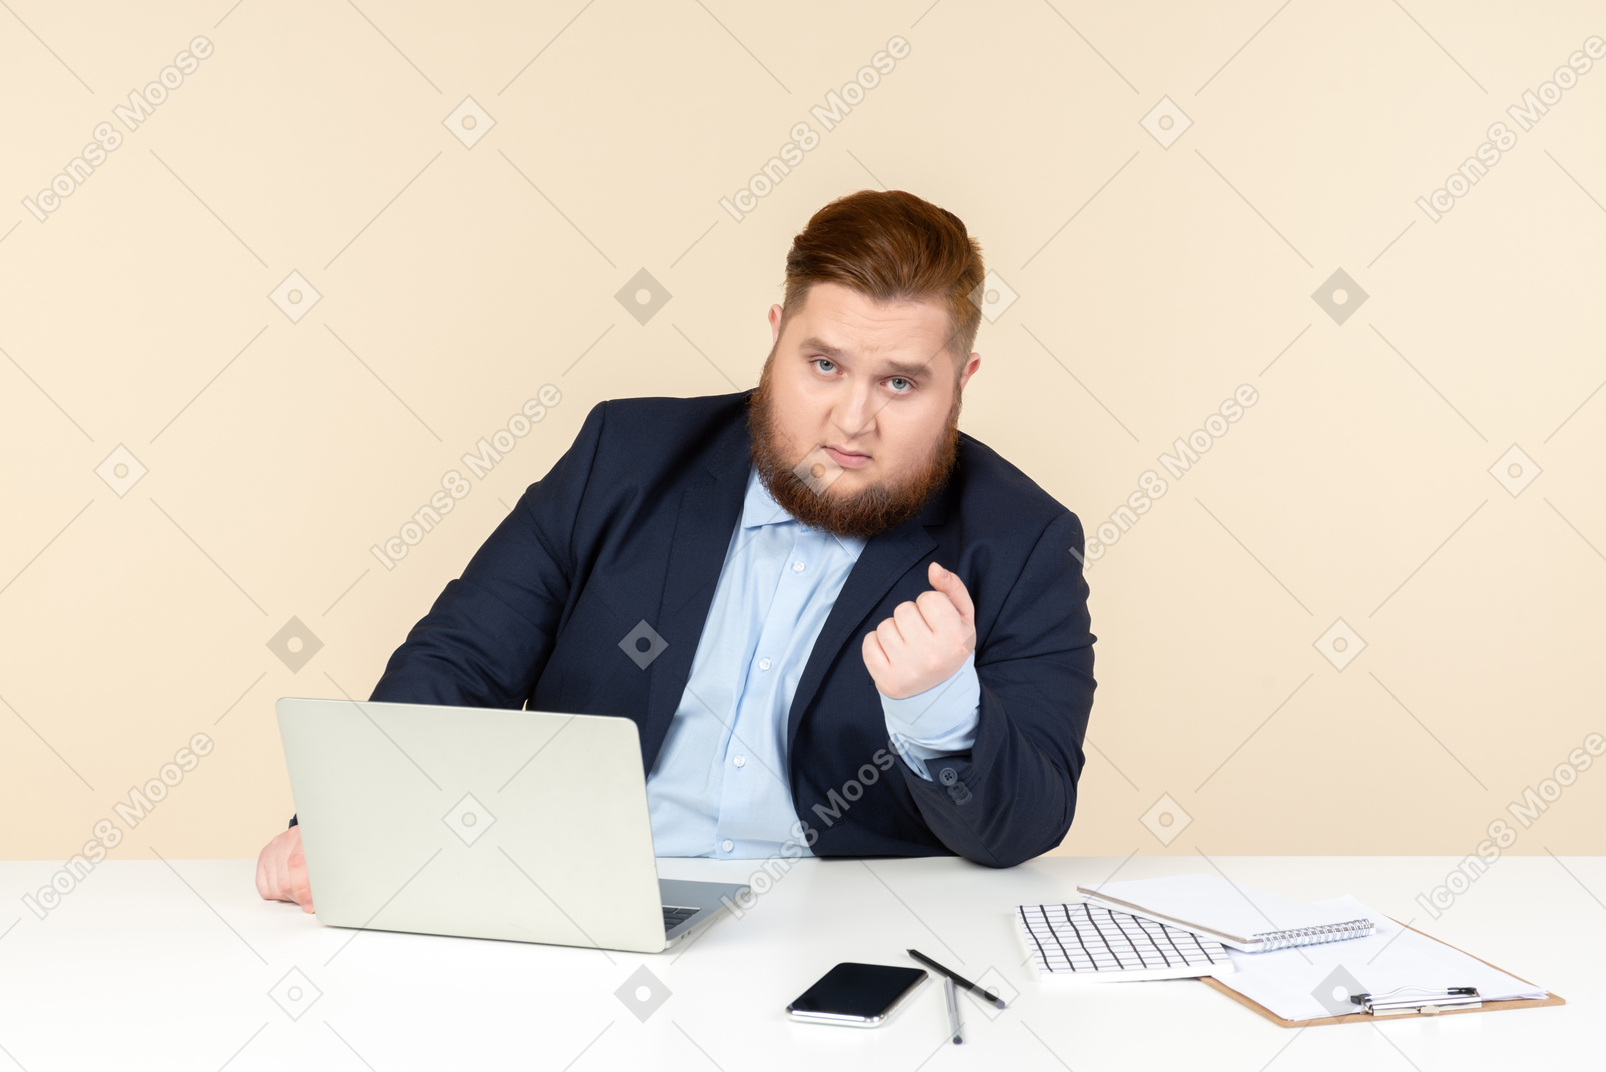 Jovem trabalhador de escritório com excesso de peso, sentado a mesa com o punho cerrado